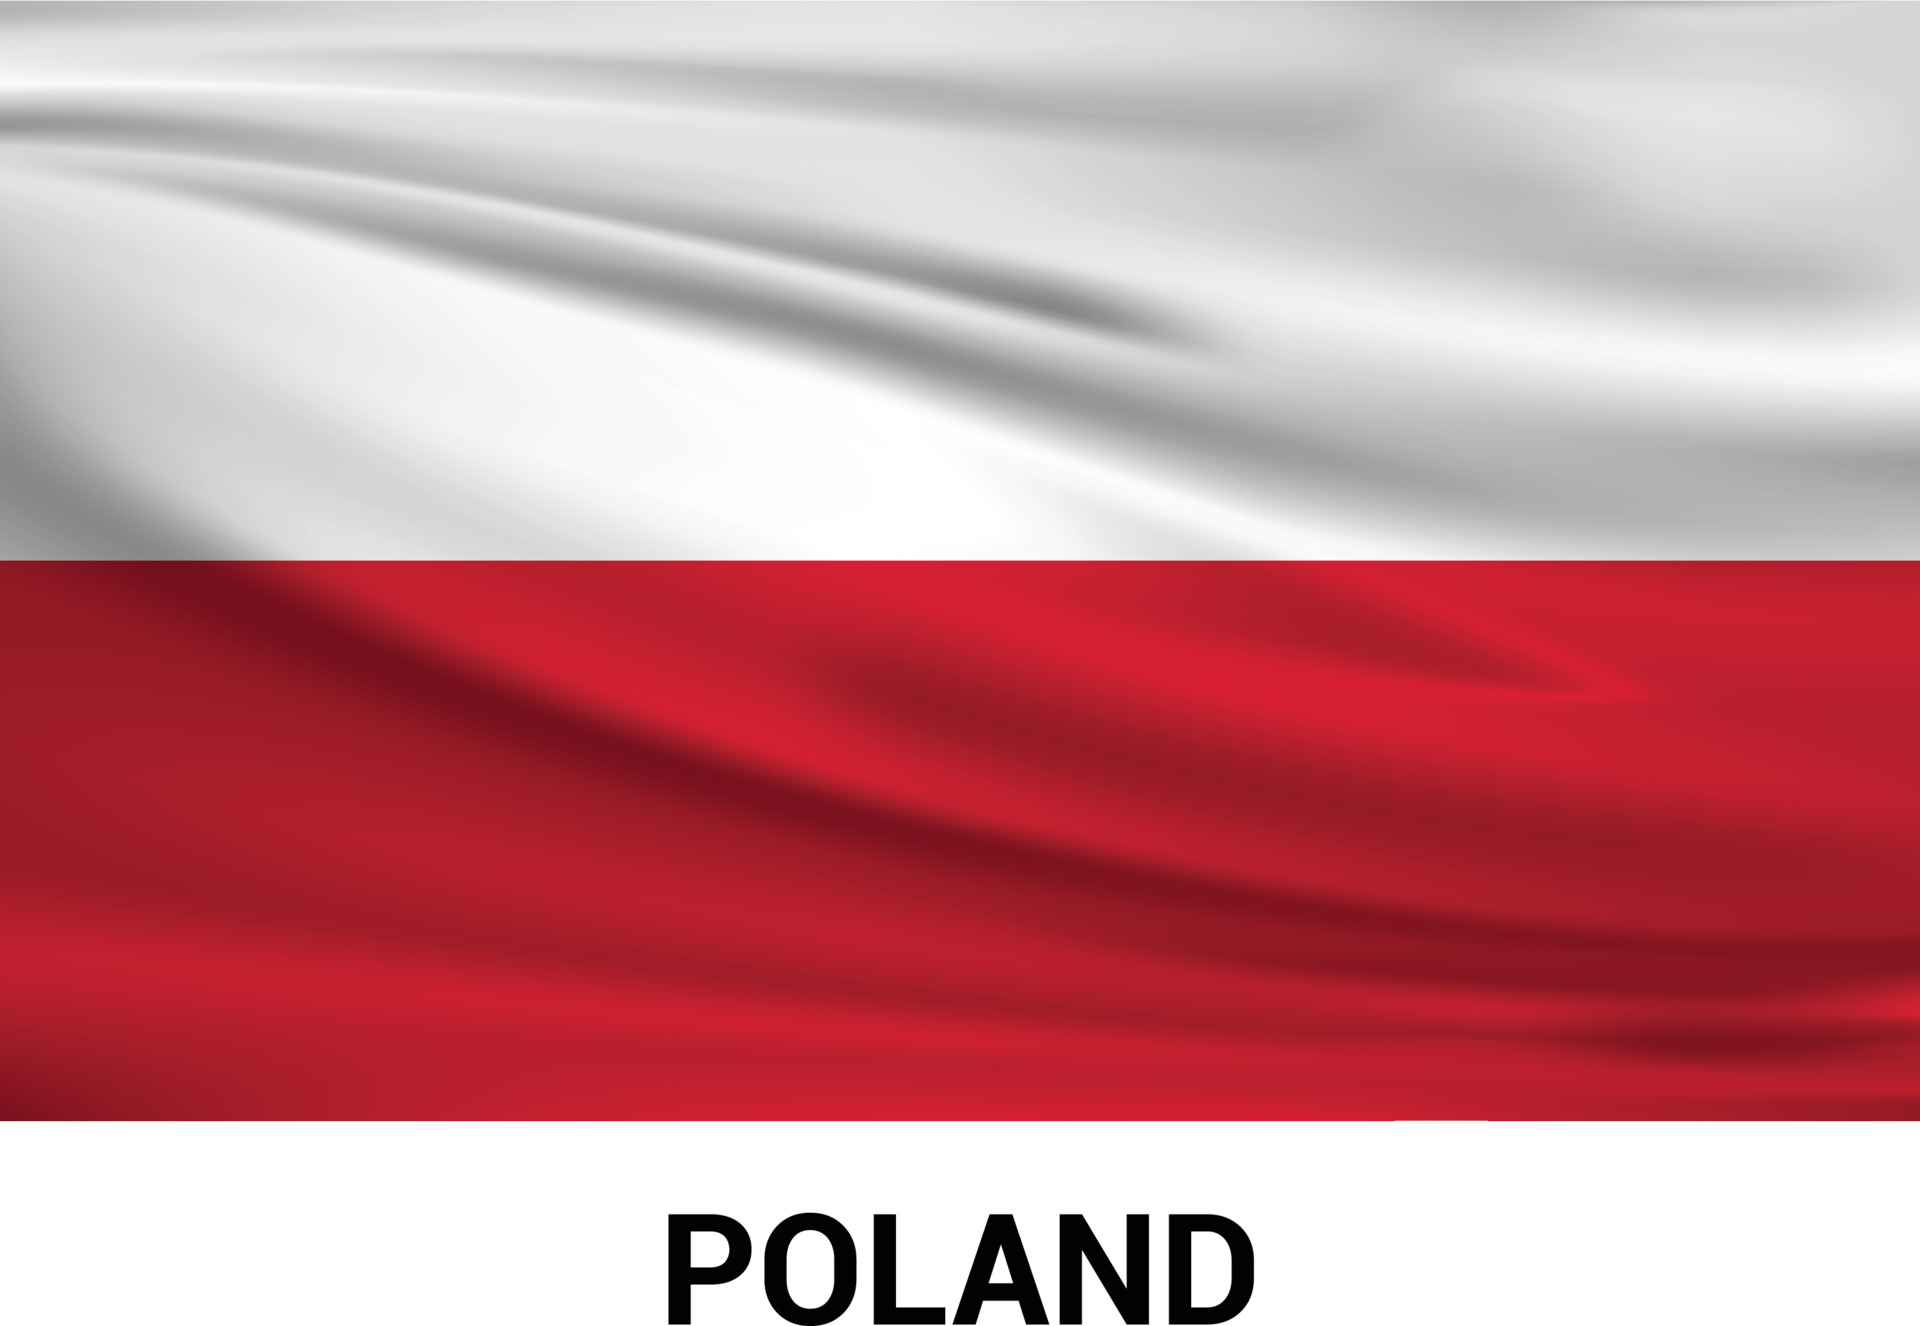 Opis obrazka: Wizualnie imponujący obrazek przedstawia polską flagę, która zajmuje cały obszar kadru.